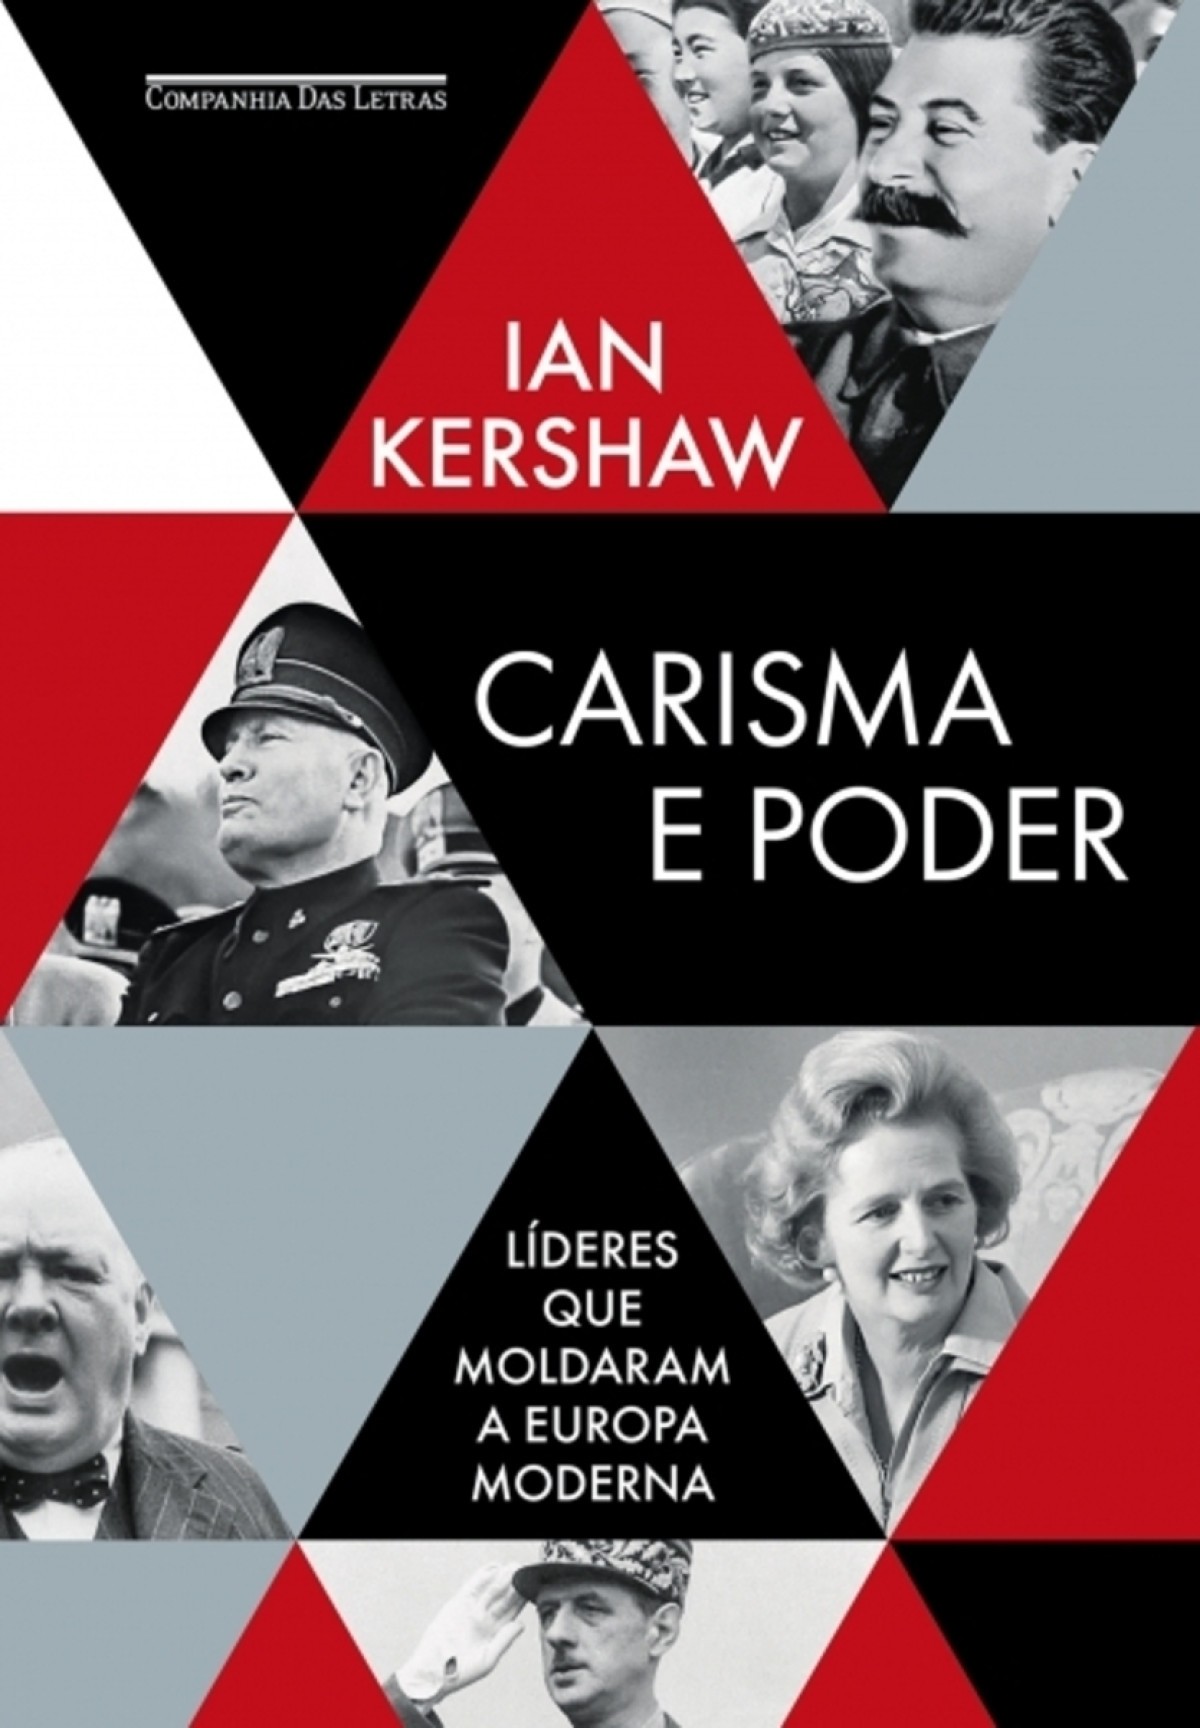 Carisma e poder — Líderes que moldaram a Europa moderna De Ian Kershaw. Tradução: Paulo Geiger. Companhia das Letras, 494 páginas. R$ 149,90 